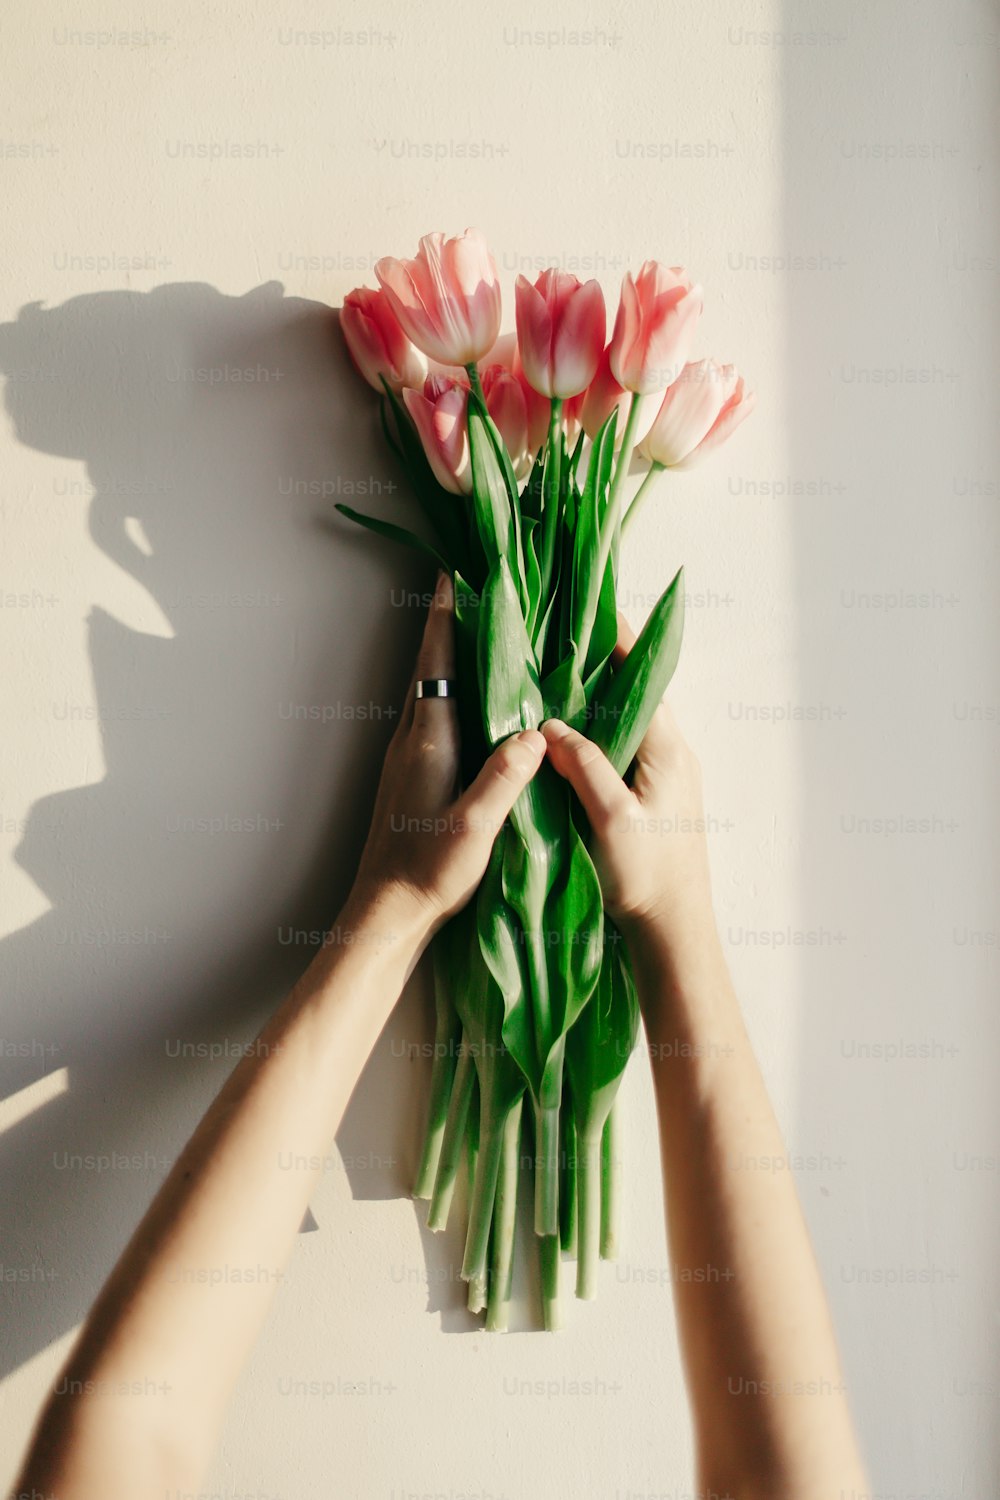 manos sosteniendo tulipanes rosados en la luz suave de la mañana en la pared rústica blanca cerca de la ventana en el fondo de la casa. Estado de ánimo fresco primaveral. Concepto de taller de blogs de Instagram. Espacio para el texto